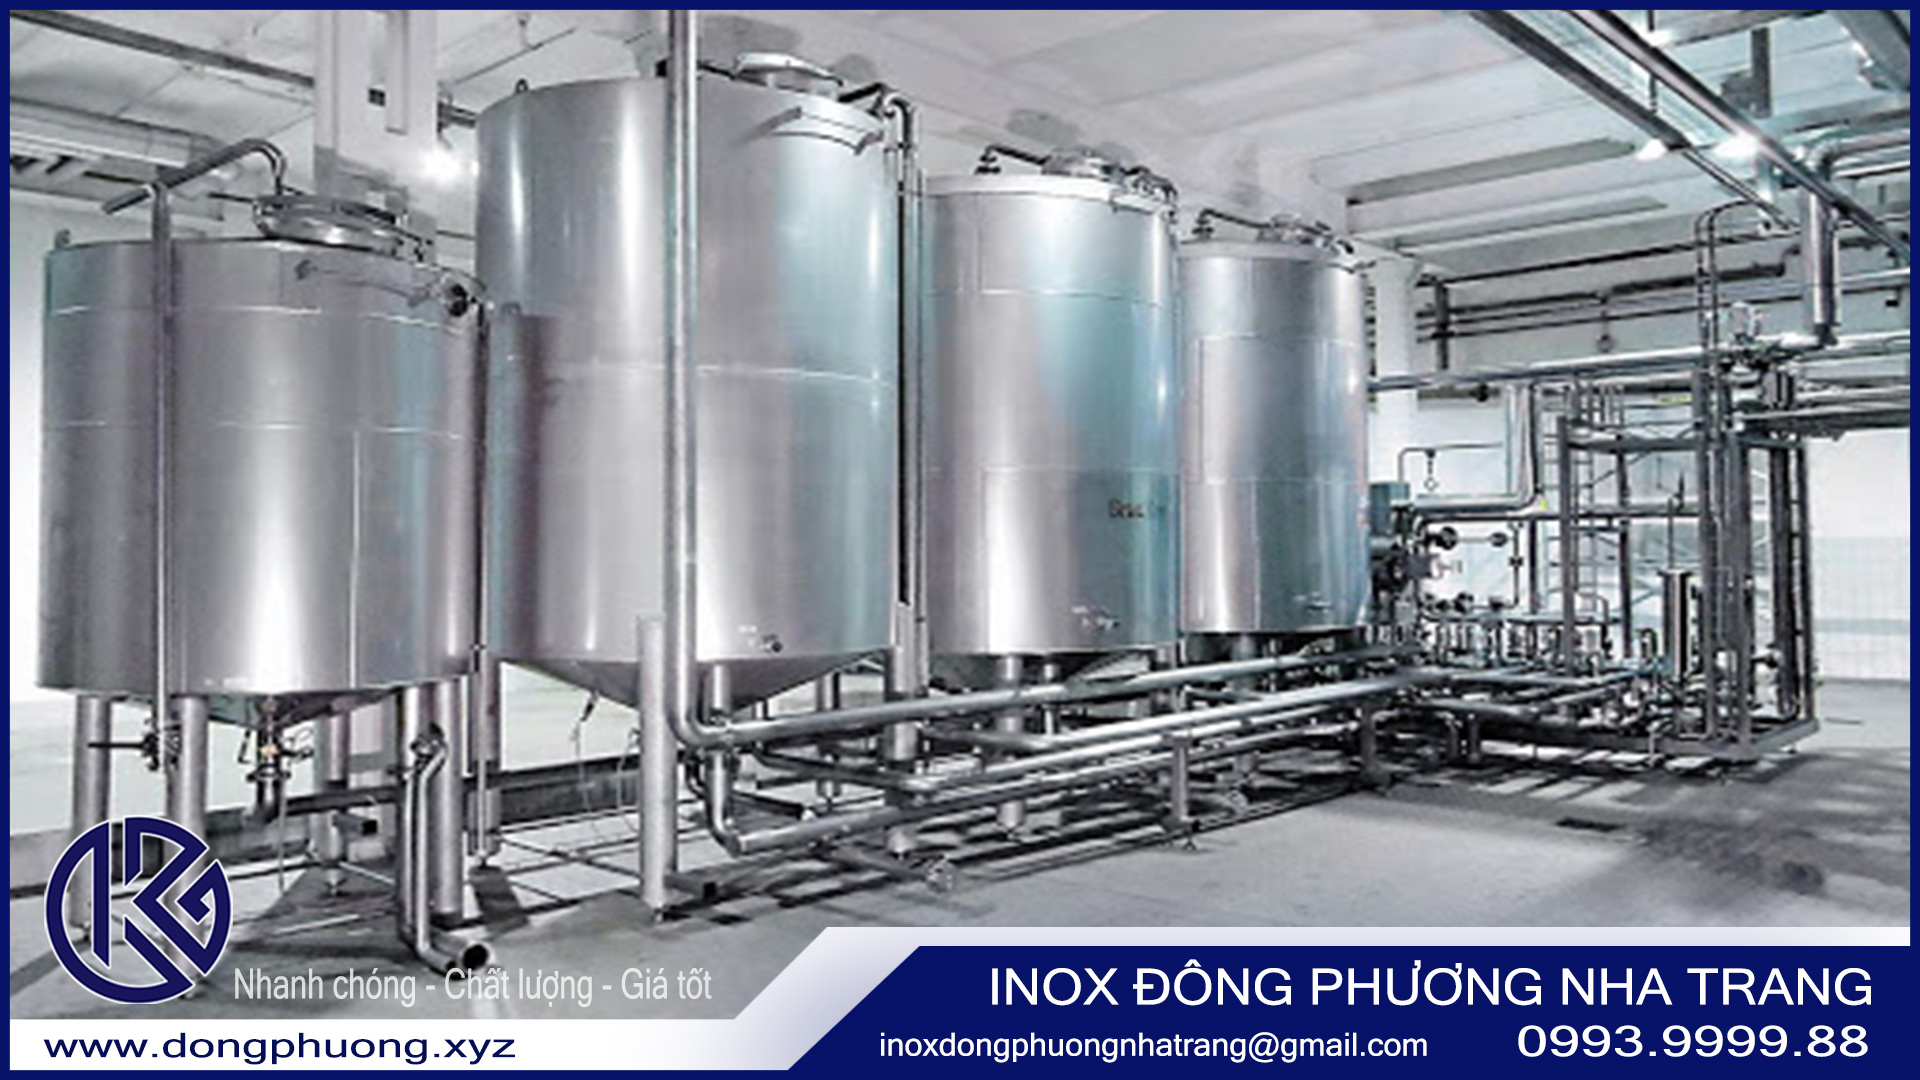 Inox trắng gương - vật liệu cao cấp được ứng dụng nhiều trong công nghiệp1